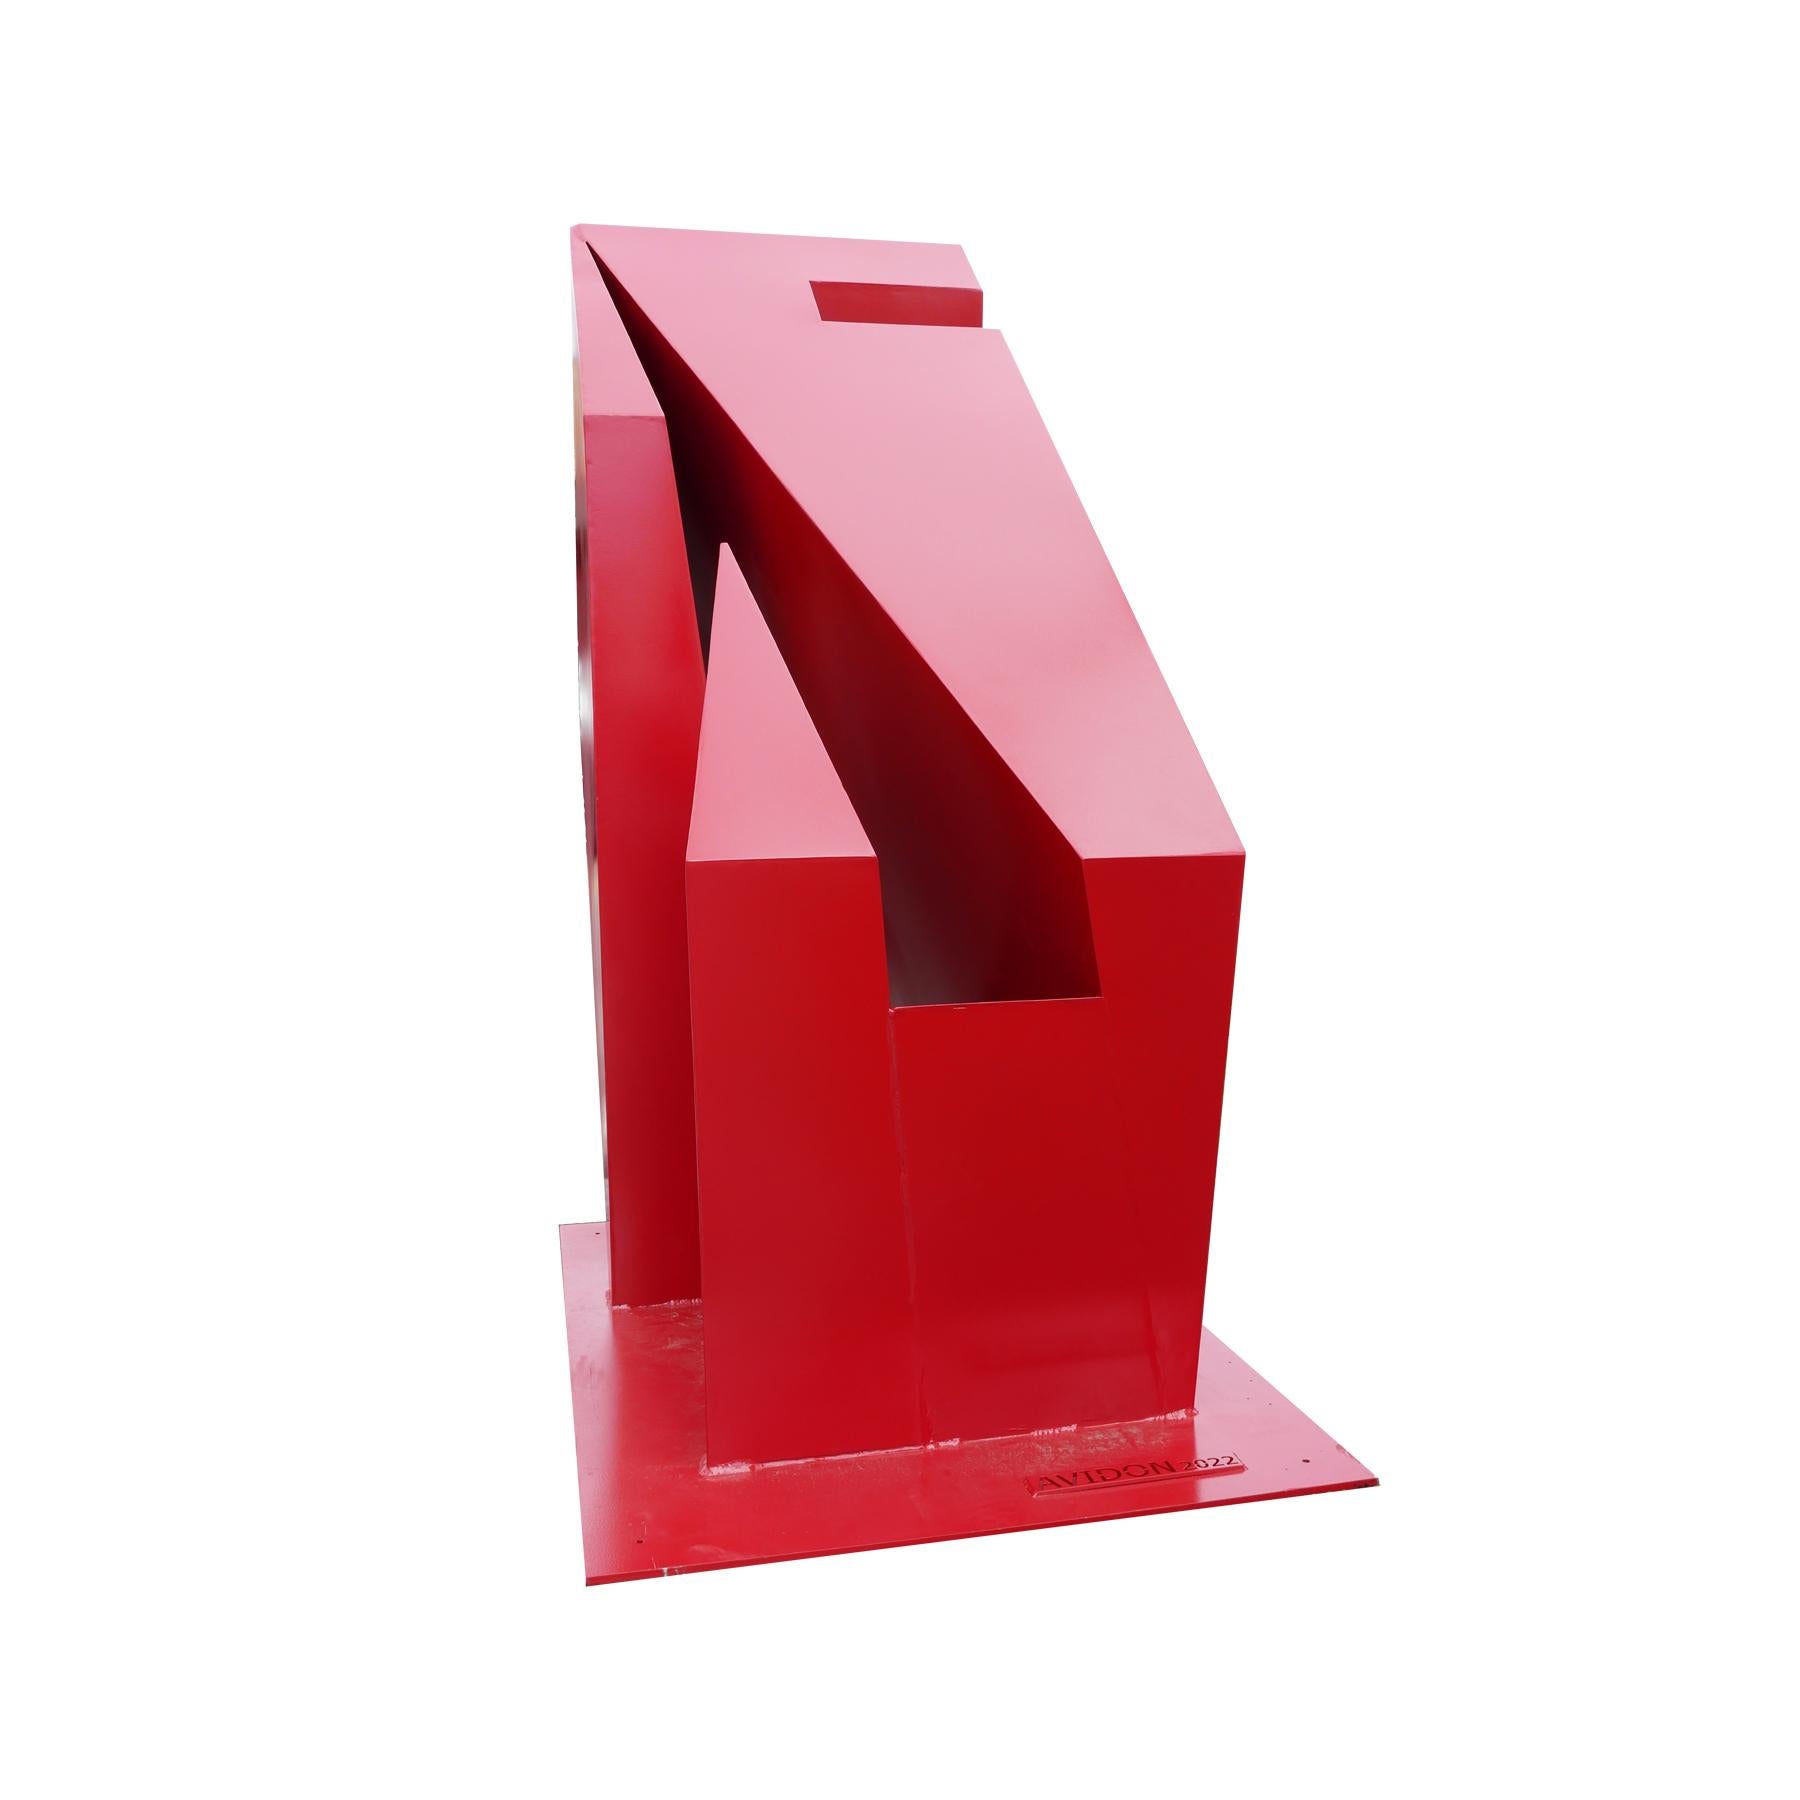 Grande sculpture d'extérieur géométrique rouge contemporaine  - Sculpture de Reeves Art and Design